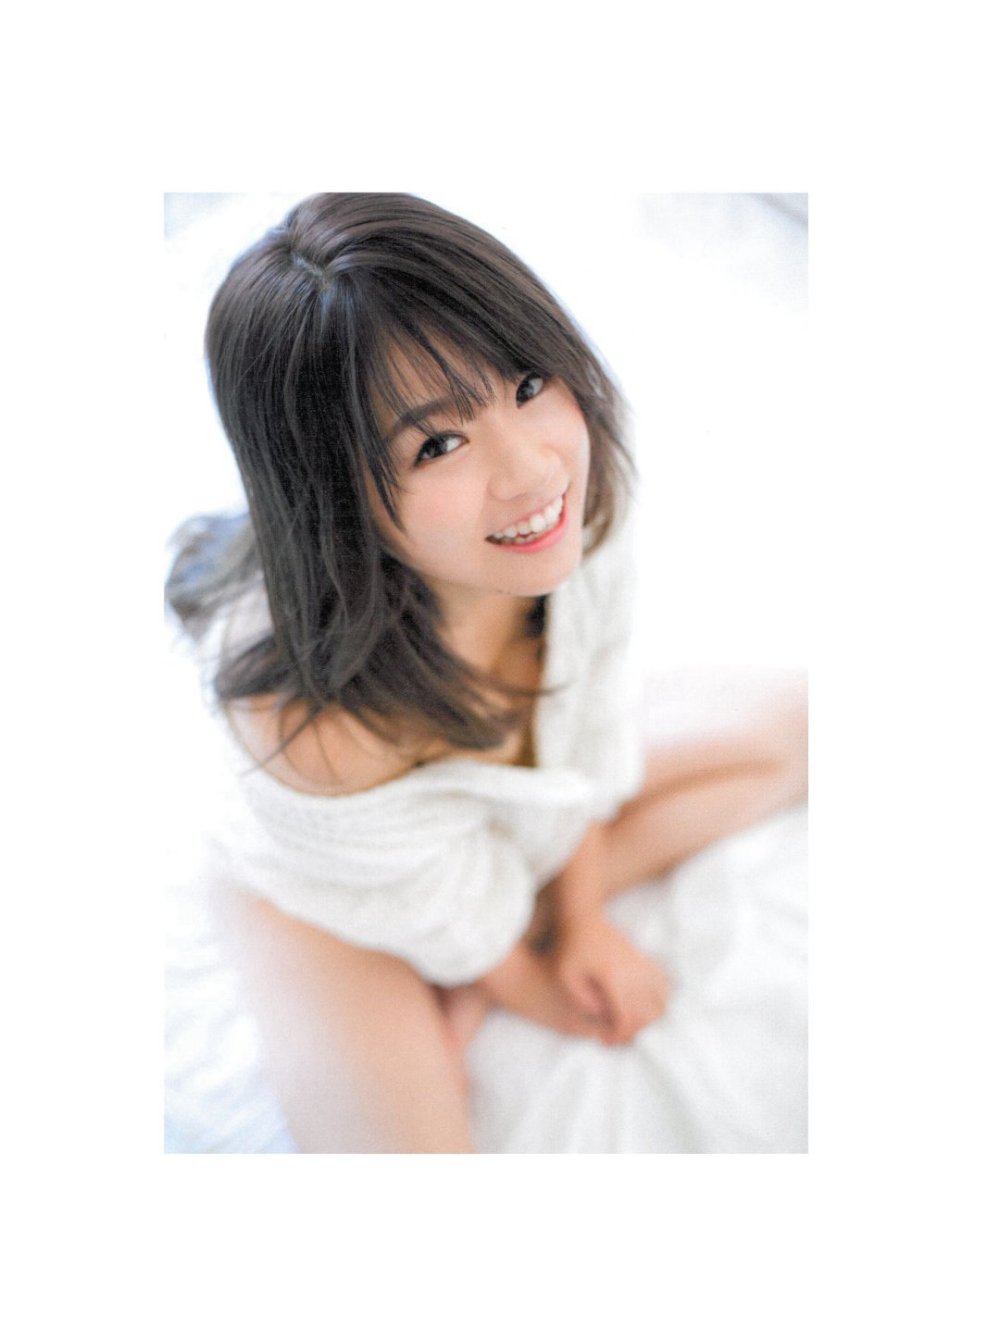 Haruka Shimada Sexy and Hottest Photos , Latest Pics